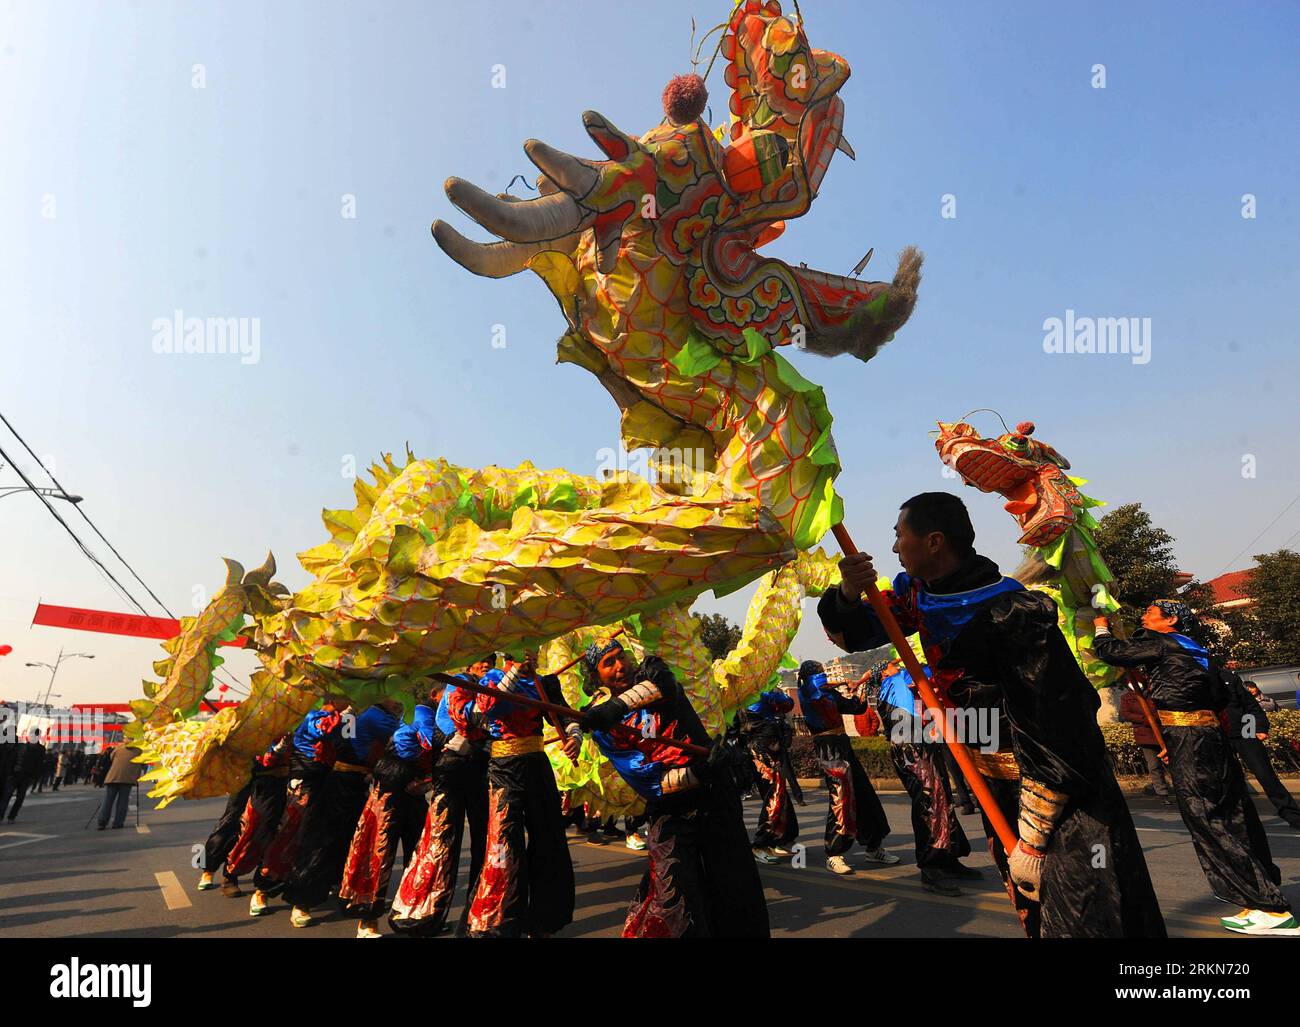 Bildnummer: 57012684 Datum: 03.02.2012 Copyright: imago/Xinhua (120203) -- DEQING, 3. Februar 2012 (Xinhua) -- Bauern führen einen Drachentanz im Deqing County in der ostchinesischen Provinz Zhejiang auf, um das bevorstehende Laternenfest am 3. Februar 2012 zu feiern. Das Laternenfest, das in diesem Jahr am 6. Februar stattfindet, markiert offiziell das Ende der chinesischen Neujahrsfeiern. (Xinhua/Xu Yu) (ljh) CHINA-ZHEJIANG-DE QING-LATERNE FESTIVAL-DRAGON DANCE (CN) PUBLICATIONxNOTxINxCHN Gesellschaft Tradition Laternenfest Drachen Drachentanz Tanz xns x0x 2012 quer 57012684 Datum 03 02 2012 Copyright Imago XI Stockfoto